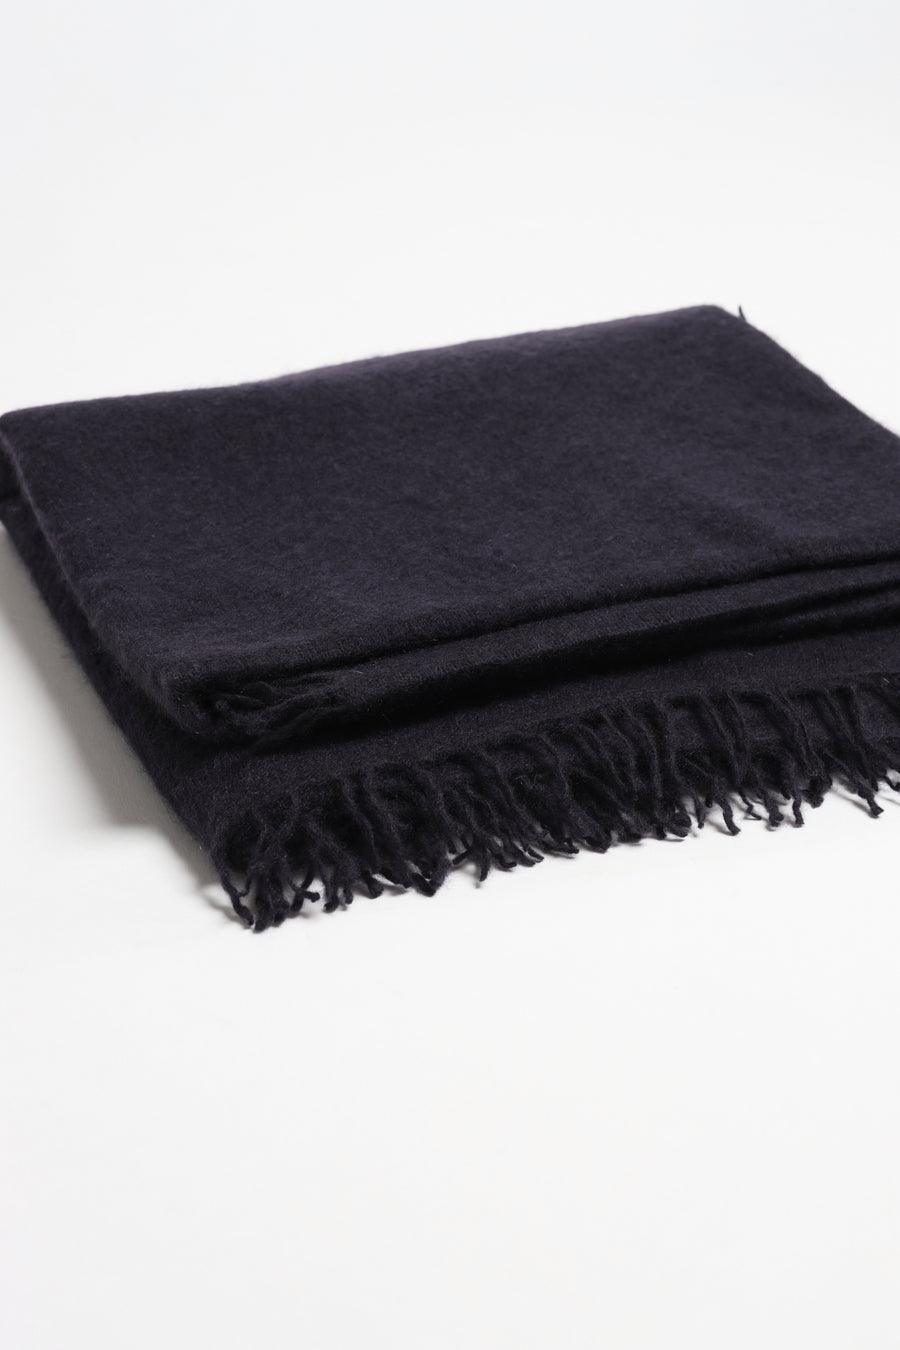 Cashmere scarf in pulchoki